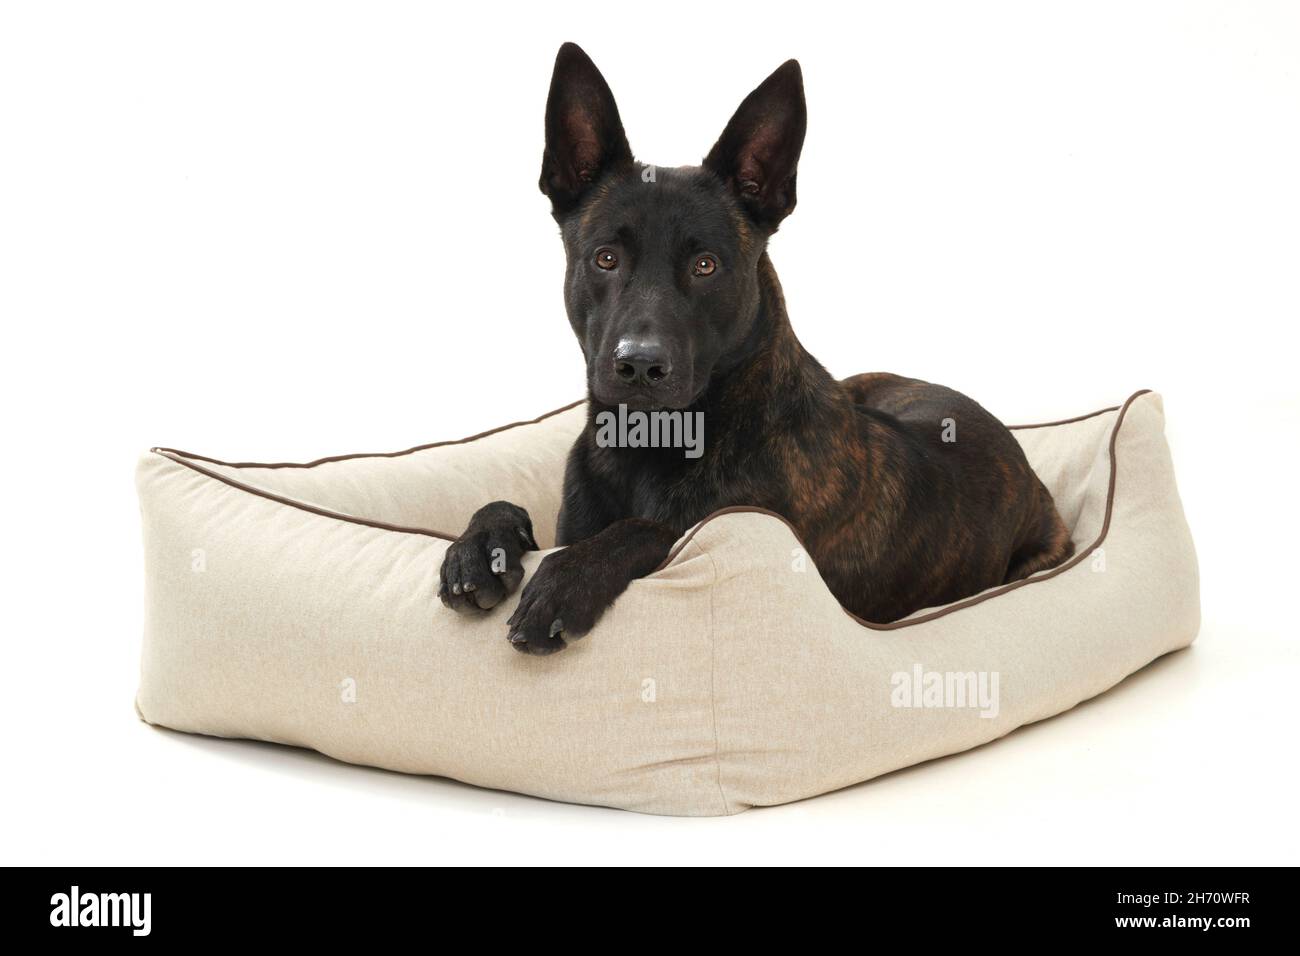 Berger hollandais.Un chien adulte se trouve dans un lit pour chien.Image studio sur fond blanc.Allemagne Banque D'Images